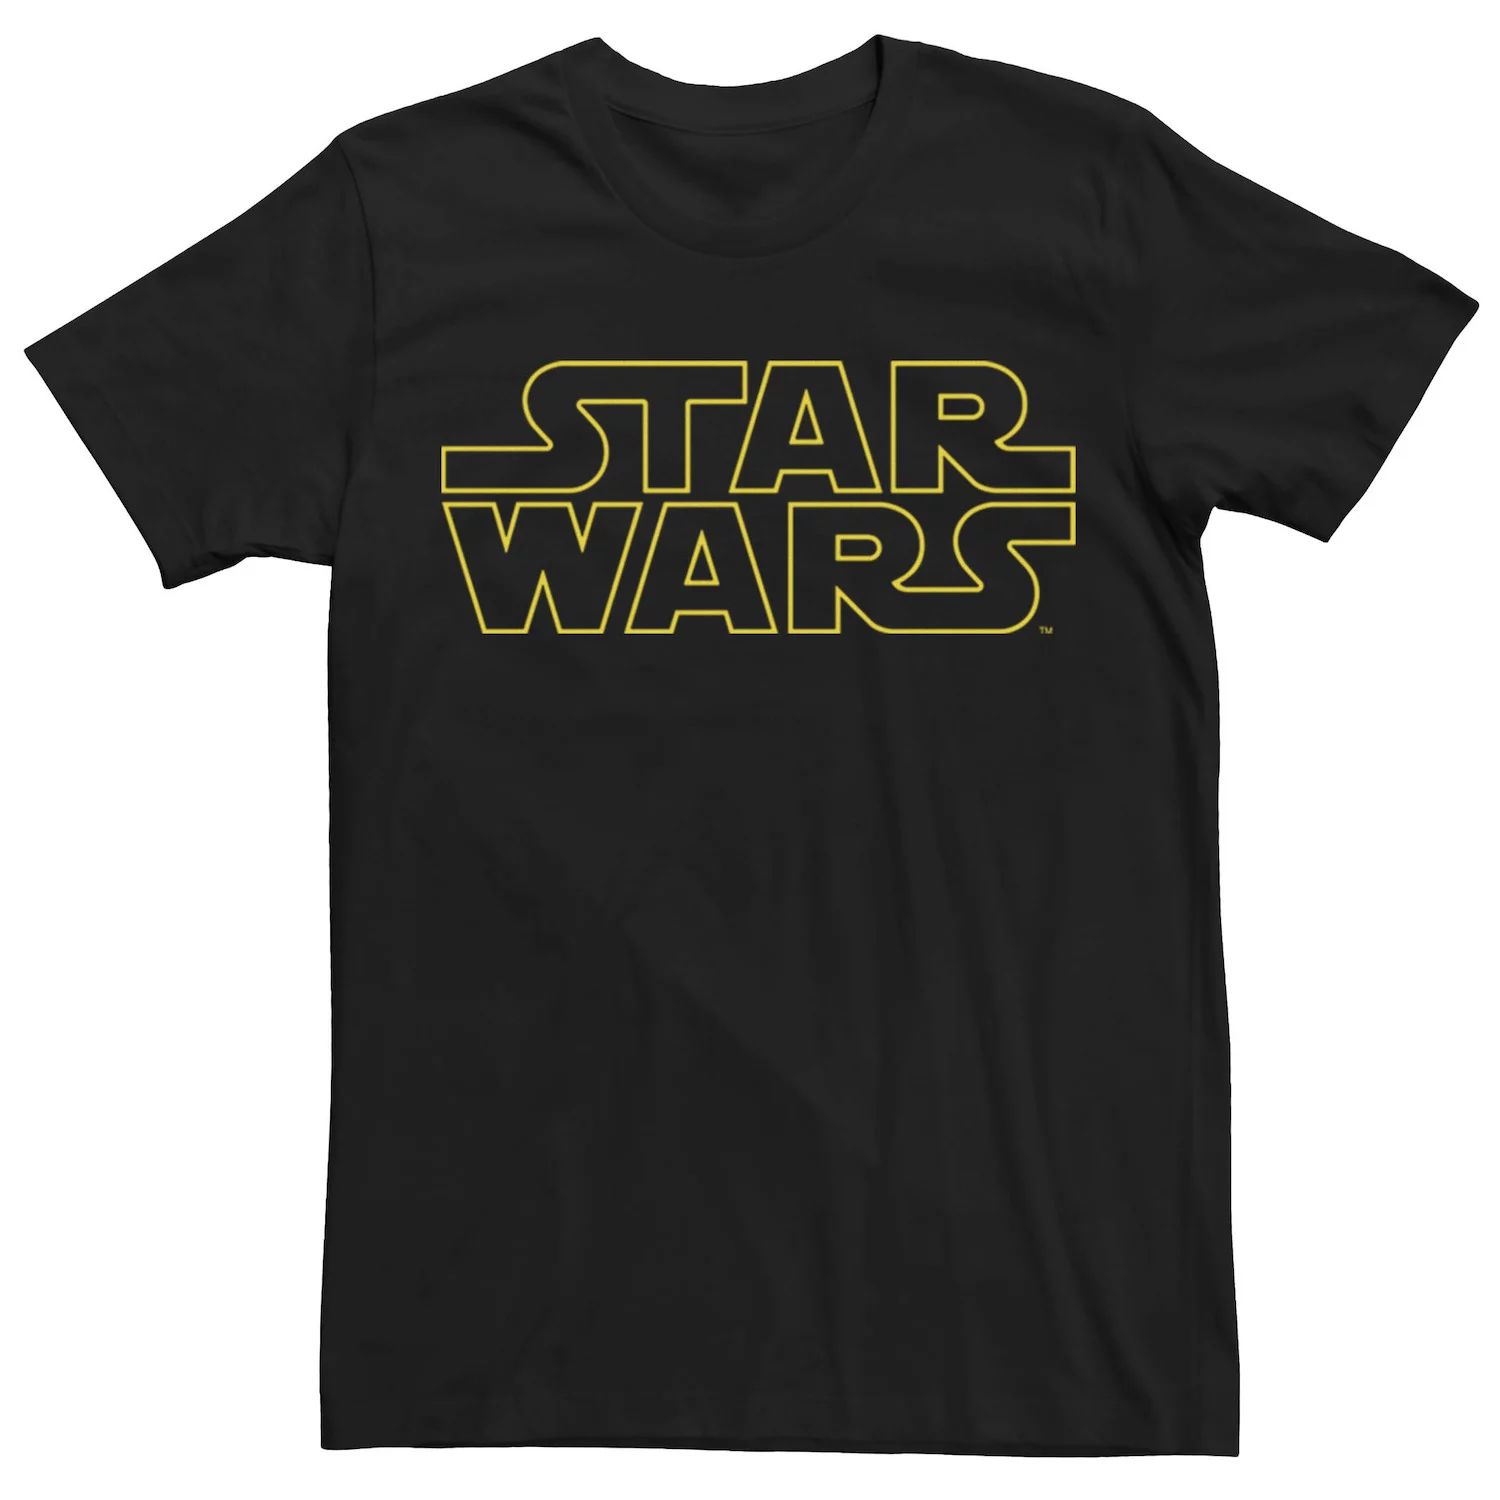 Мужская классическая желтая футболка с текстовым логотипом Star Wars